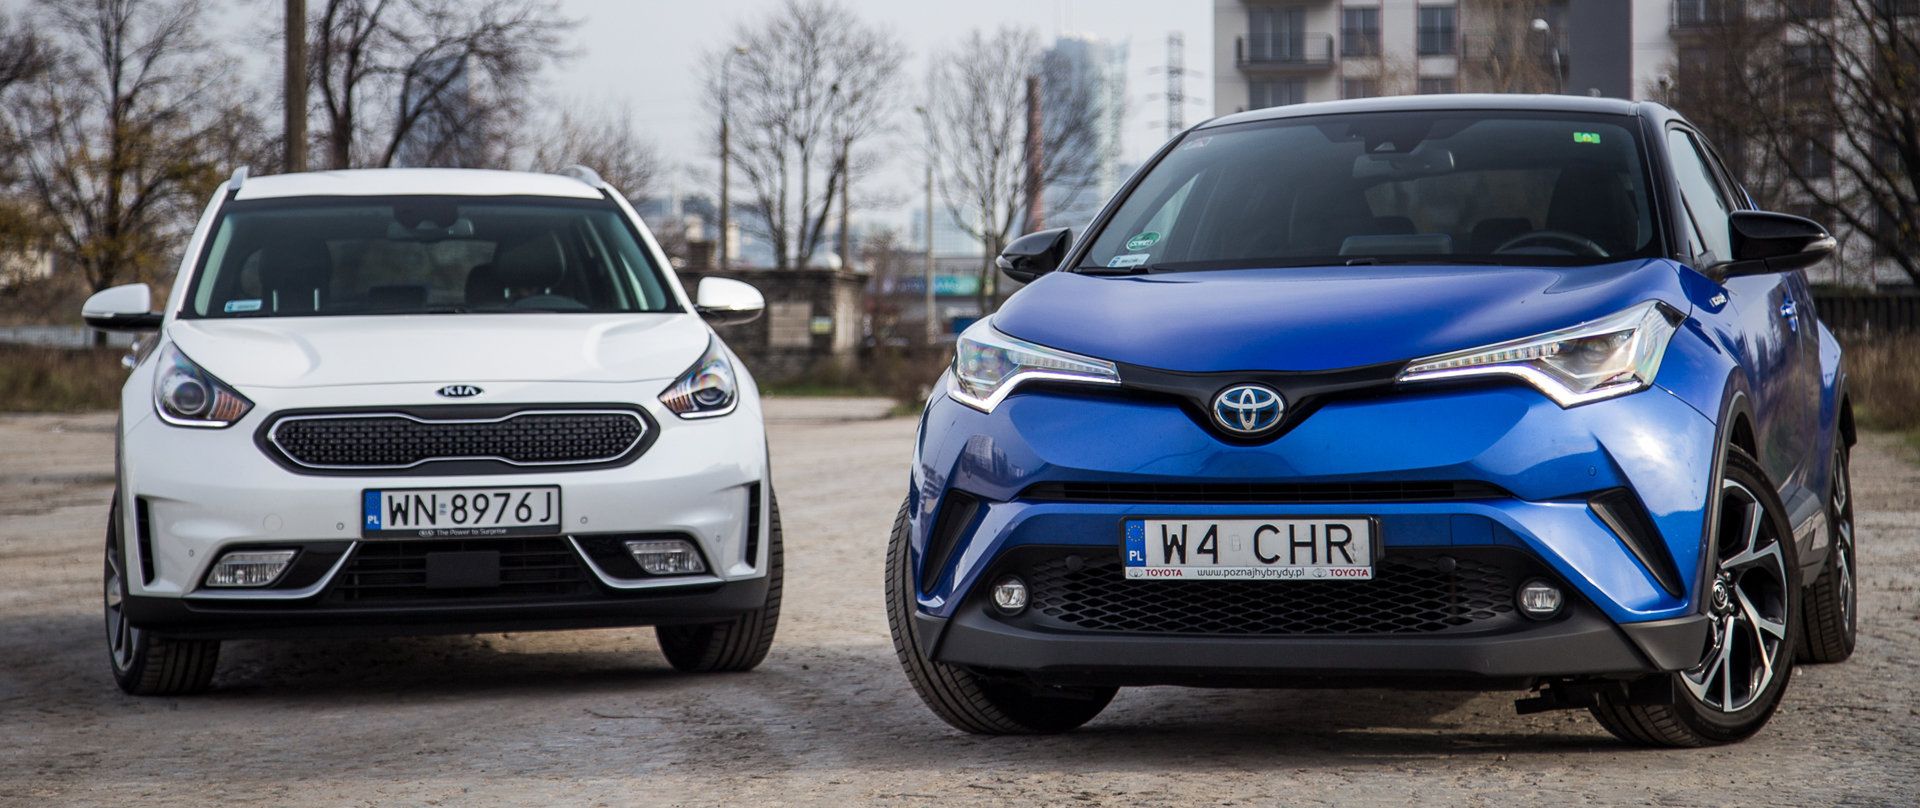 Test: Kia Niro Toyota C-HR - porównanie ceny, spalanie | Autokult.pl